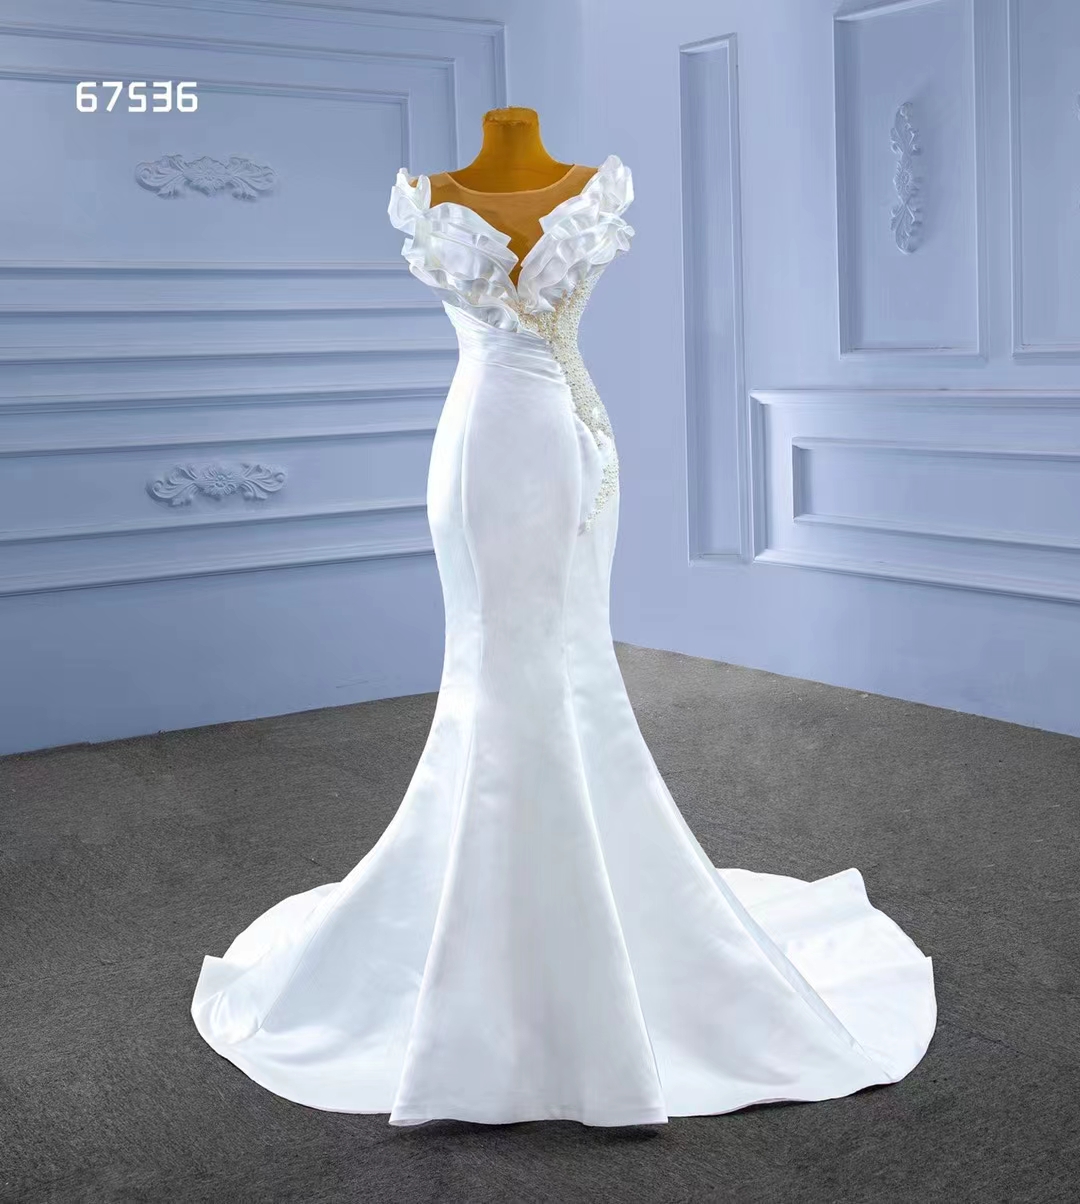 Seksi Yumuşak Saten Beyaz Düğün Denizkızı Elbise Trendi Tasarım Kısmi Boncuk SM67536